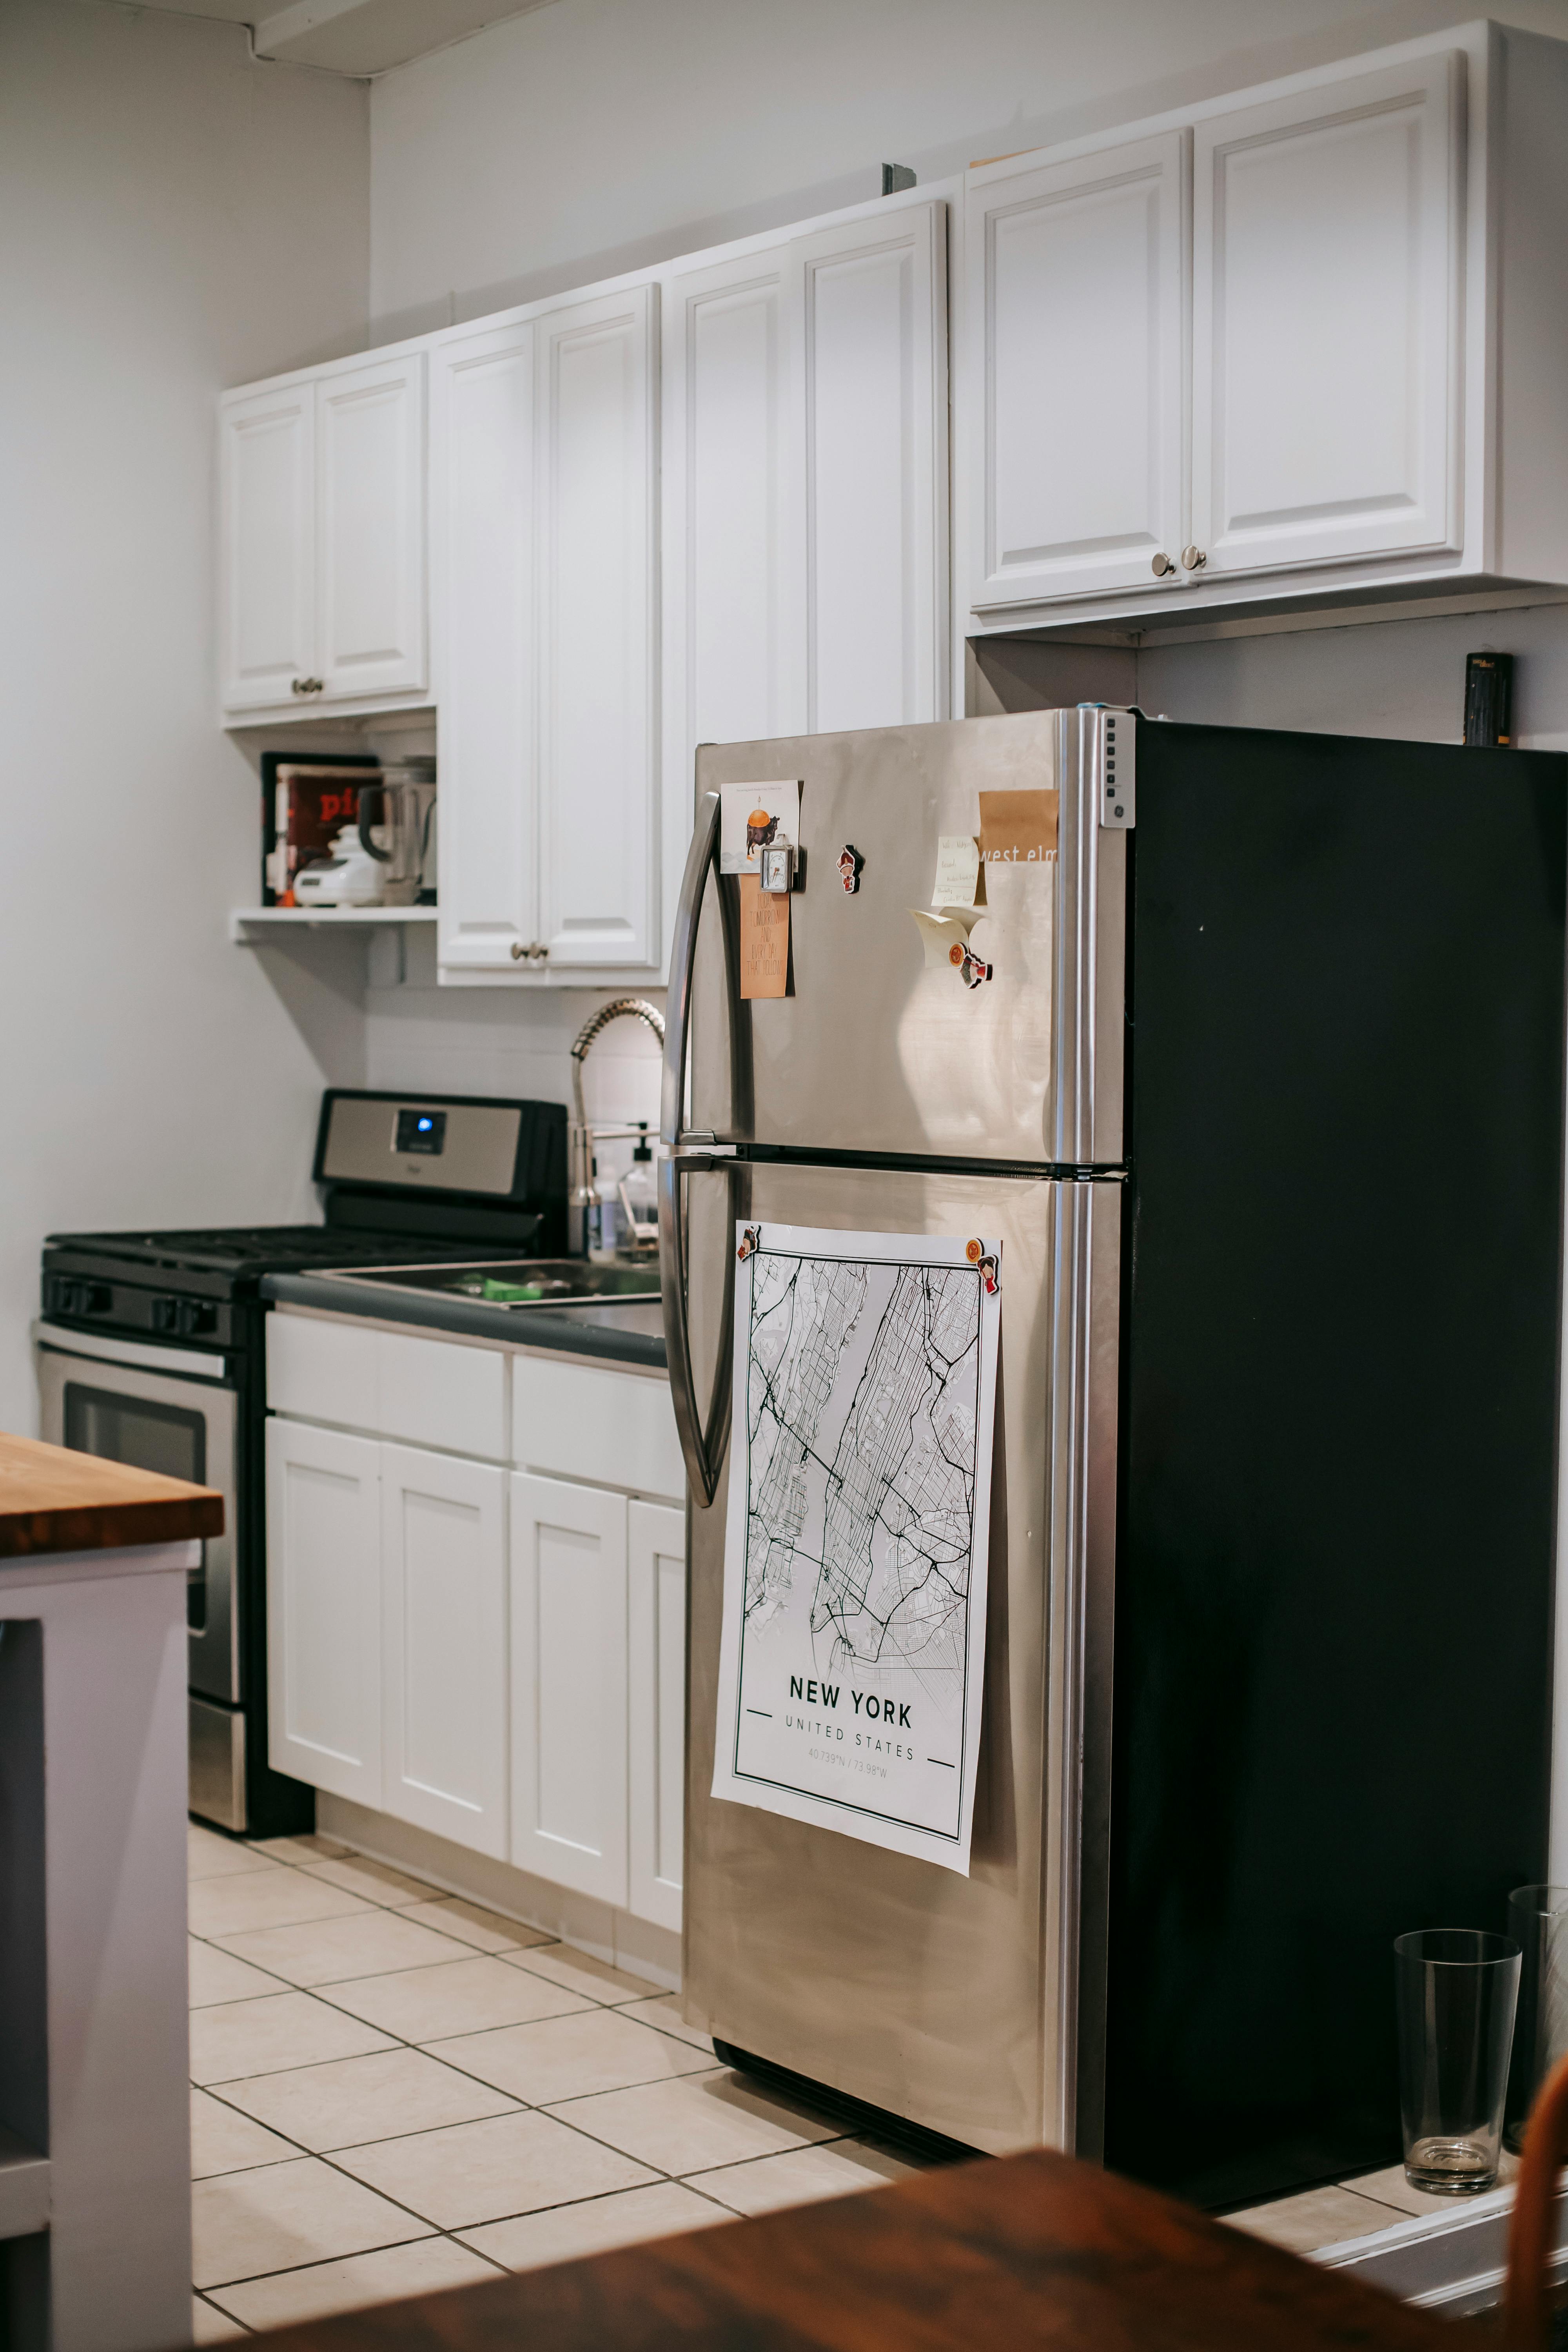 A refrigerator | Source: Pexels